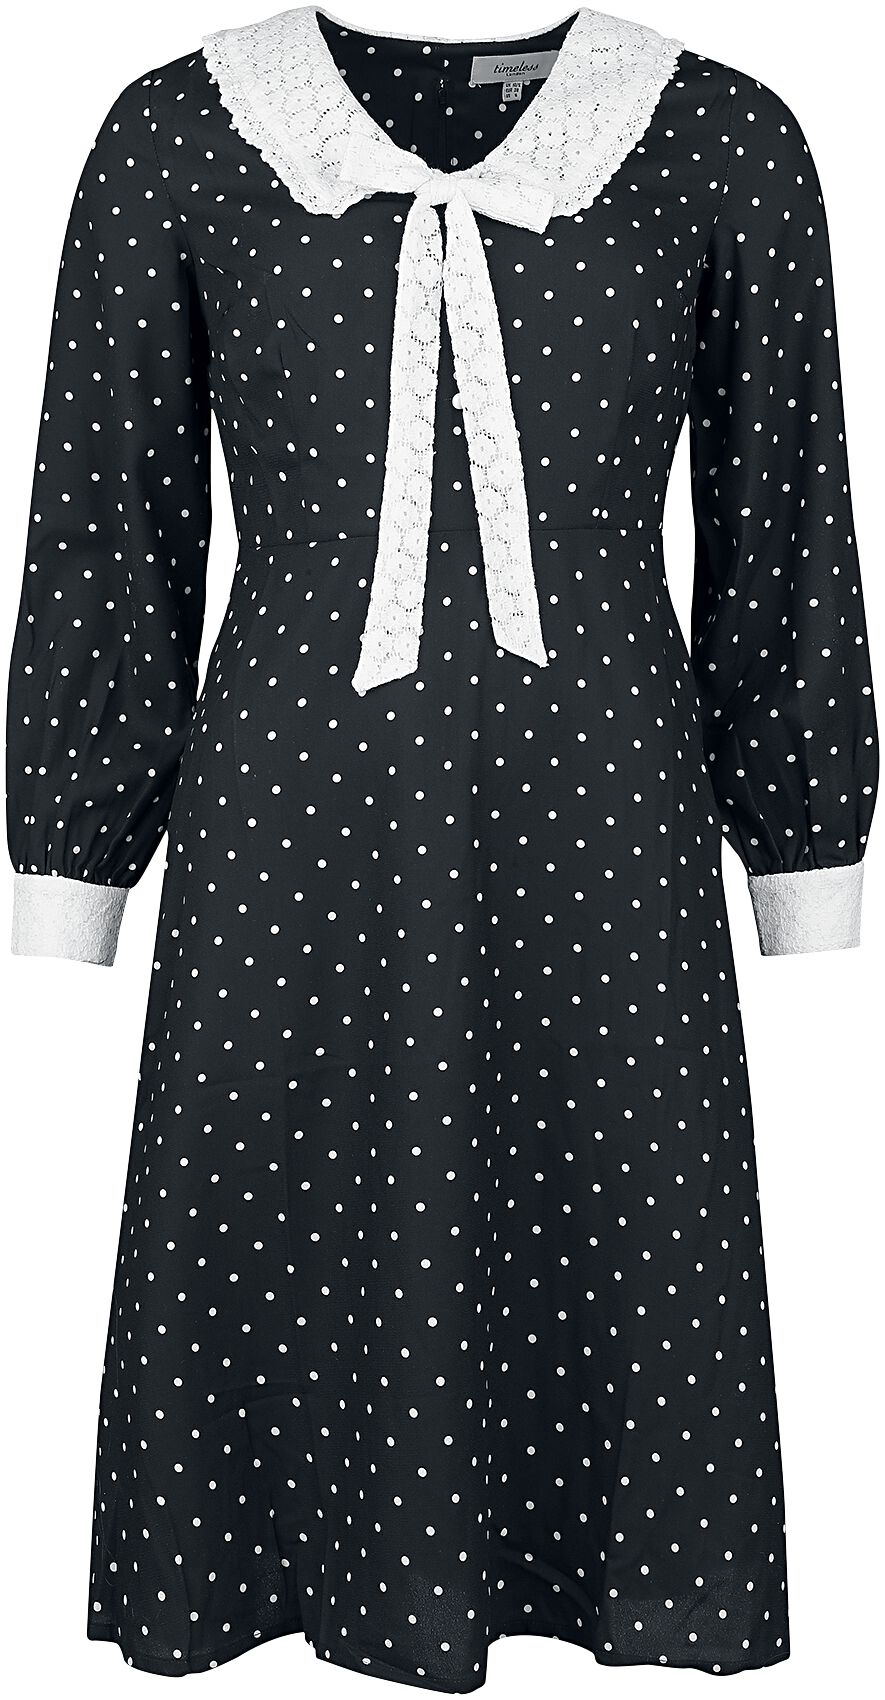 Timeless London Bow Front Dress Mittellanges Kleid schwarz weiß in S